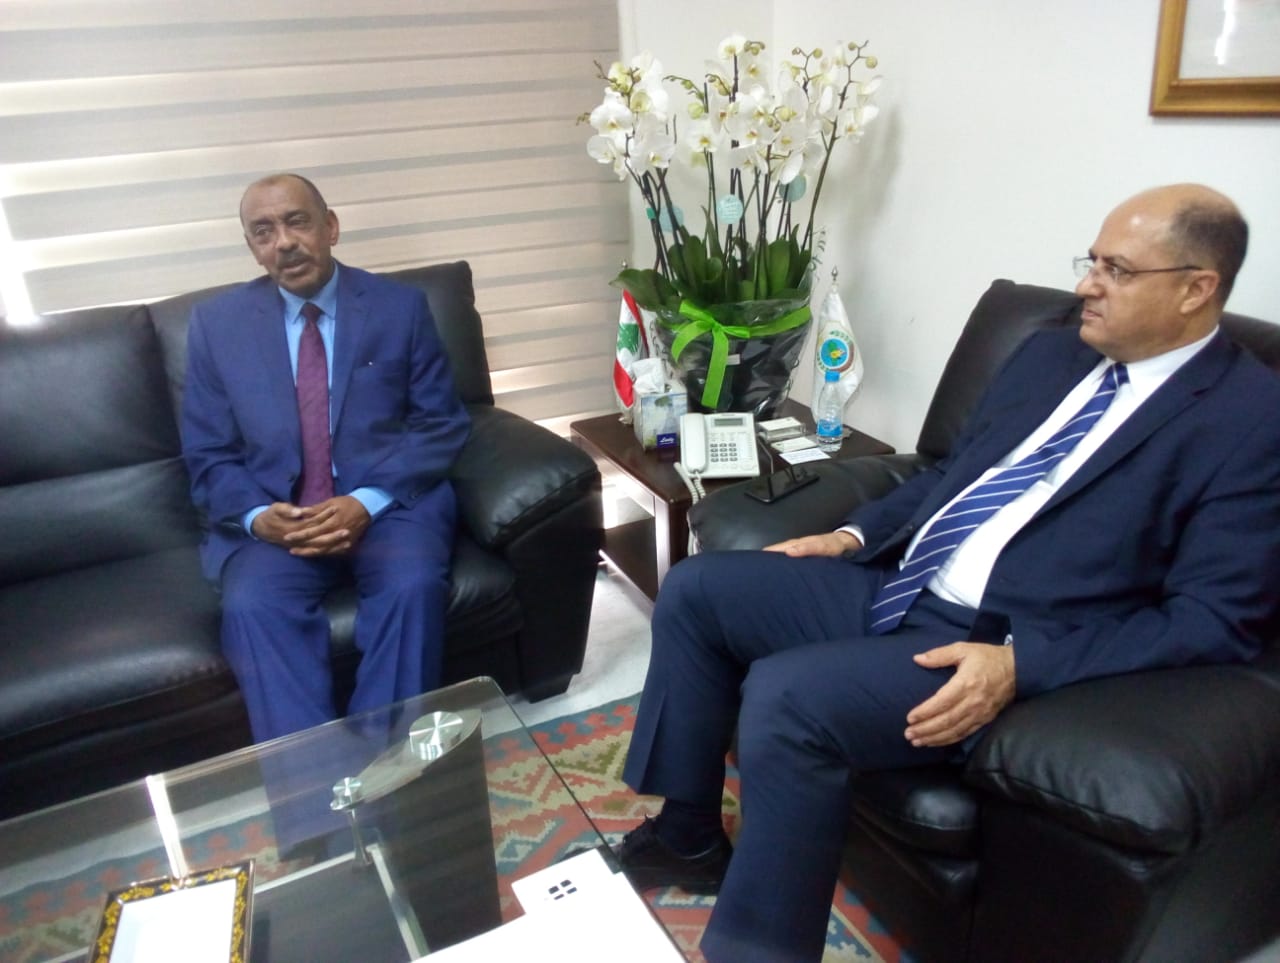  وزير الزراعة استقبل السفير السوداني ونواباً وتابع واقع الجامعة اللبنانية 